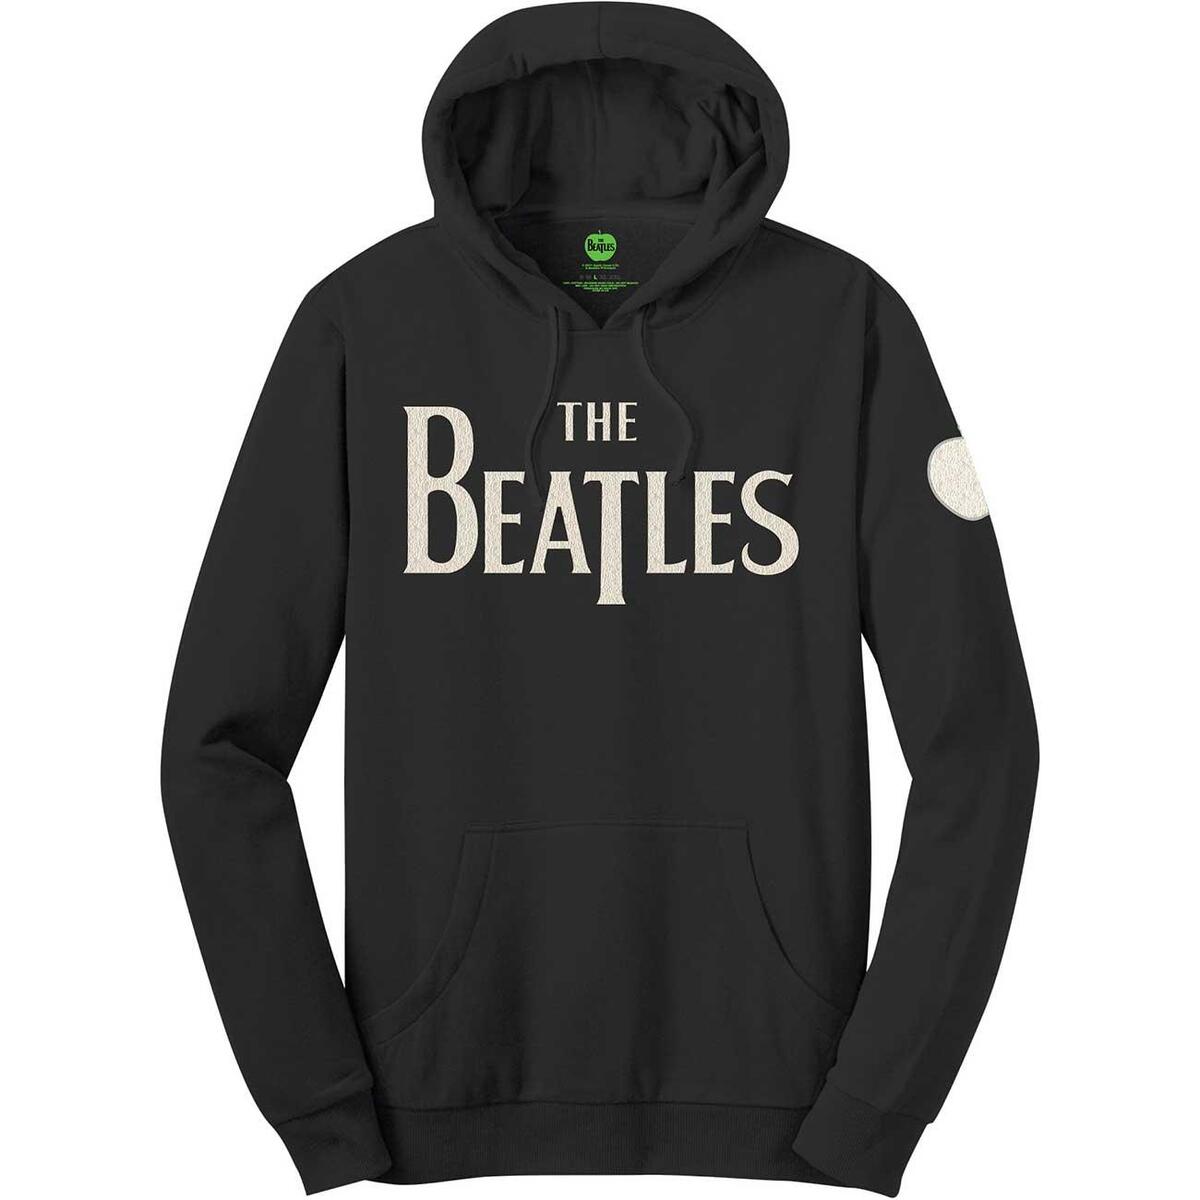 (ザ・ビートルズ) The Beatles オフィシャル商品 ユニセックス アップル ロゴ パーカー フード付き トレーナー 【海外通販】